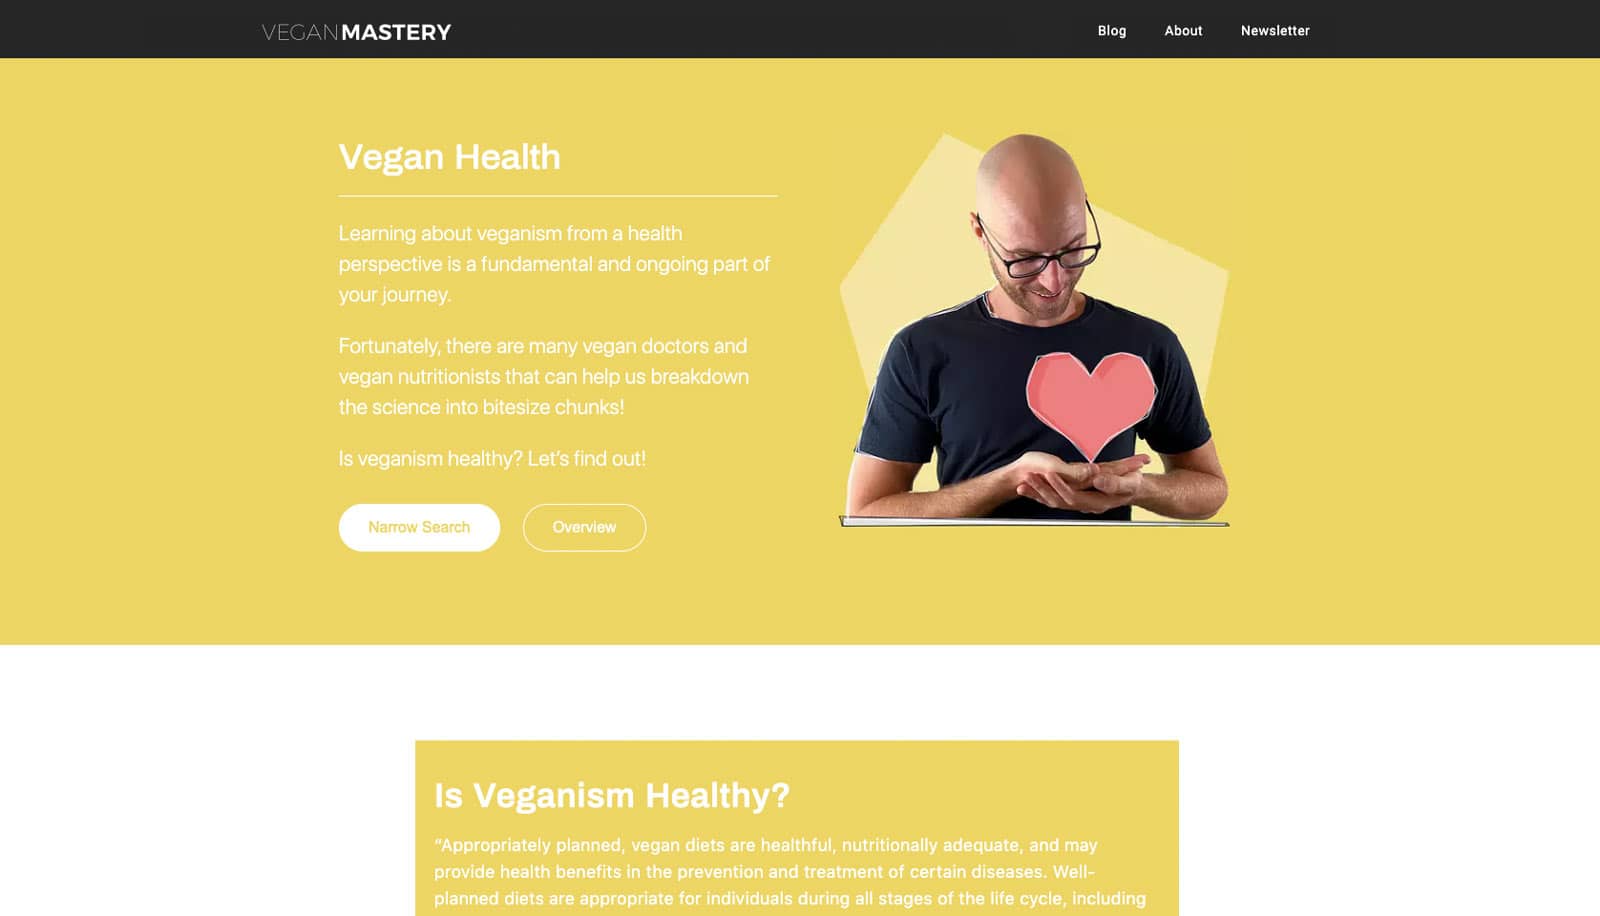 Vegan Mastery - Going Vegan For Health